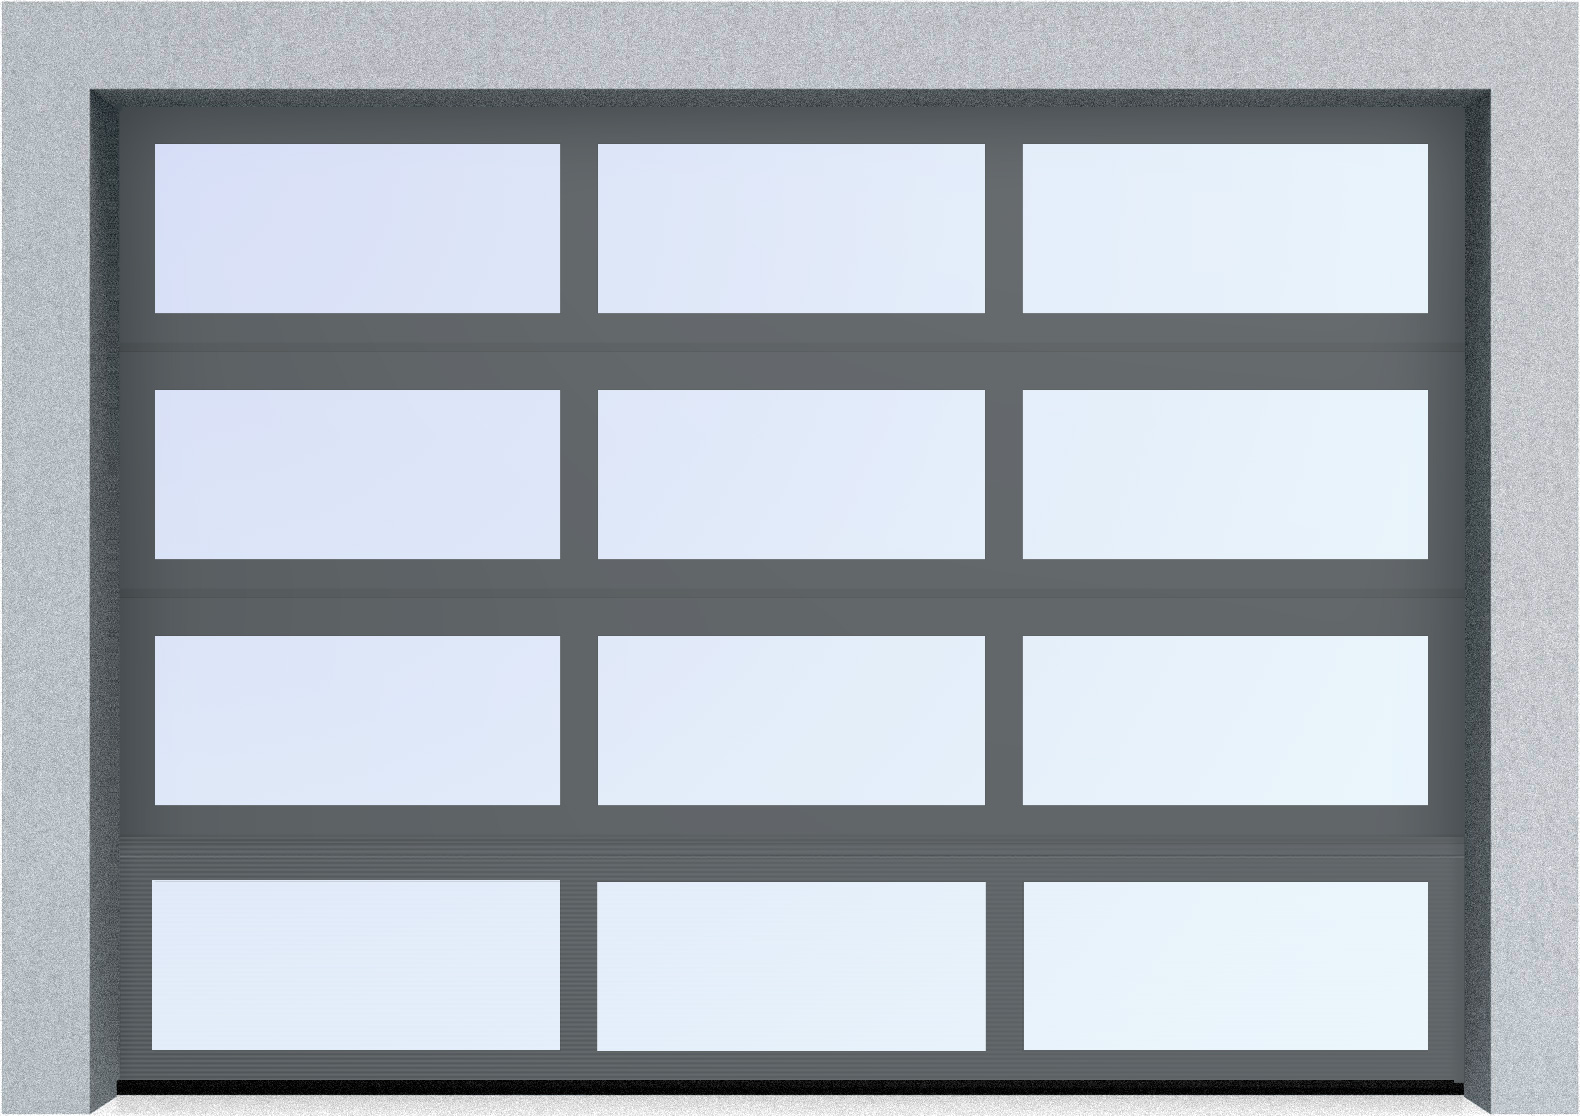  Секционные панорамные ворота серии AluTrend (АЛП) 2375х2500 нижняя панель стандартные цвета, фото 5 